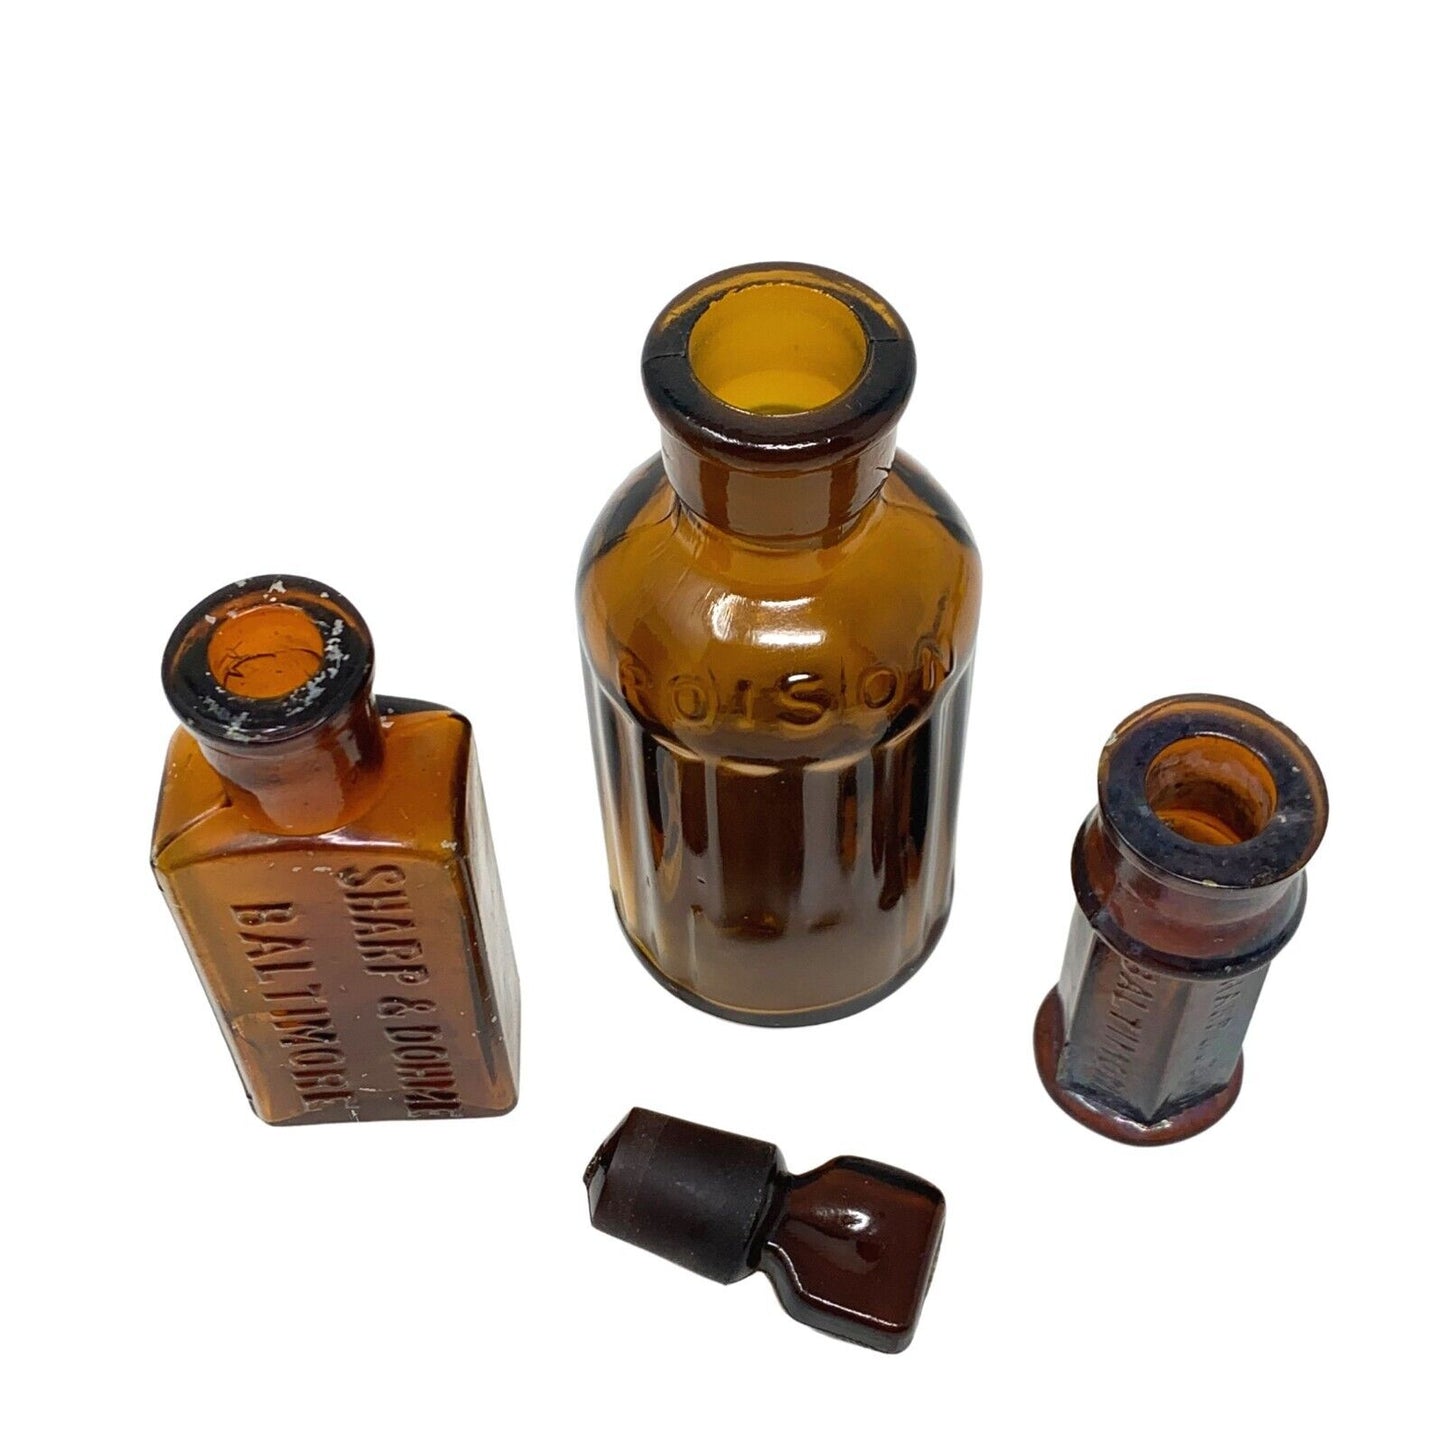 Set of 3 Antique Amber Glass Poison Bottles (KC-92 + 2 More)